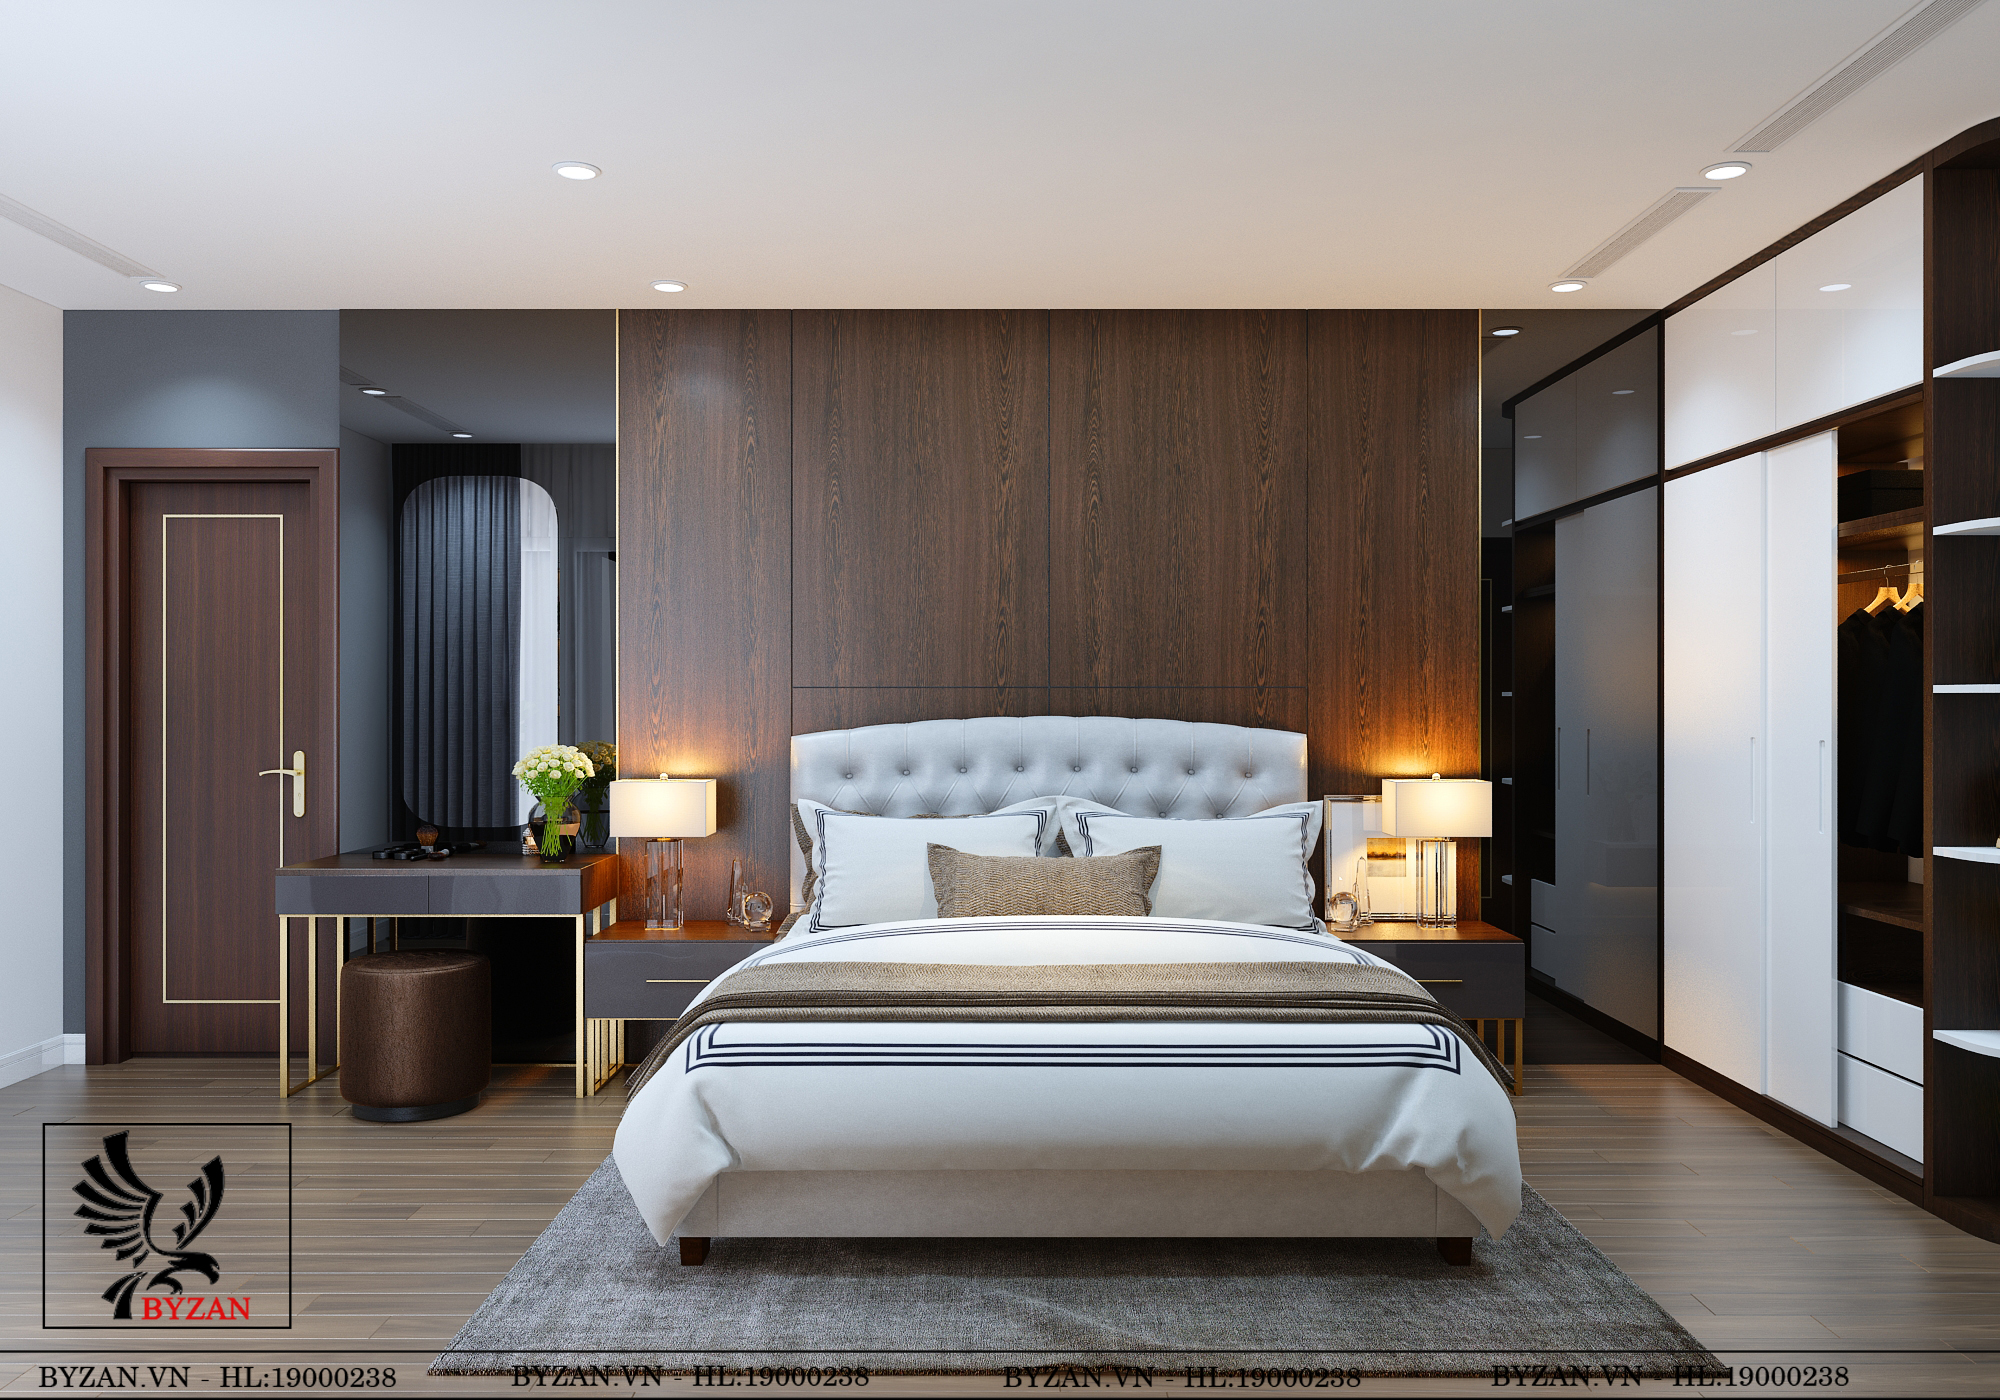 Những mẫu nội thất phòng ngủ thiết kế phong cách hiện đại đẹp